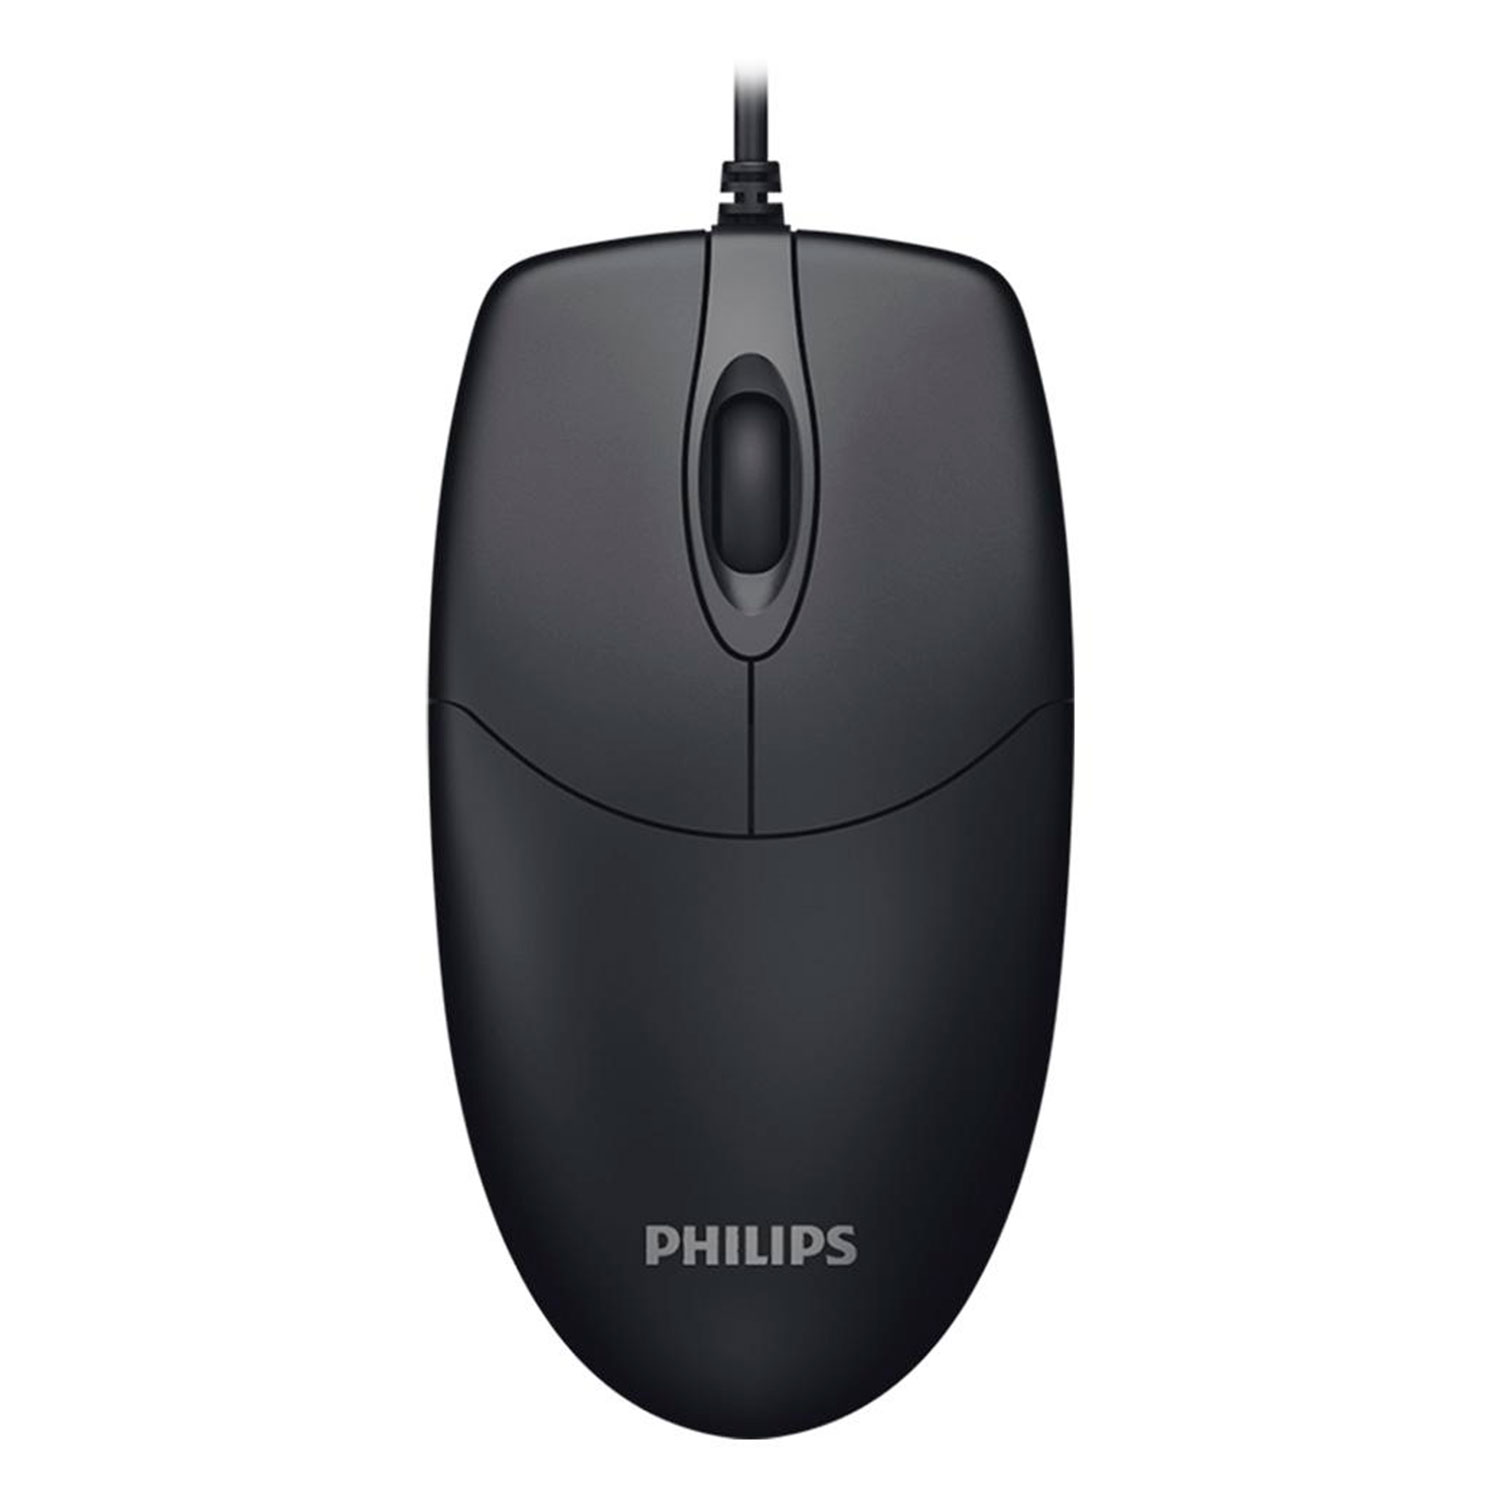 Mouse Philips SPK7234 1000 DPI USB - Preto